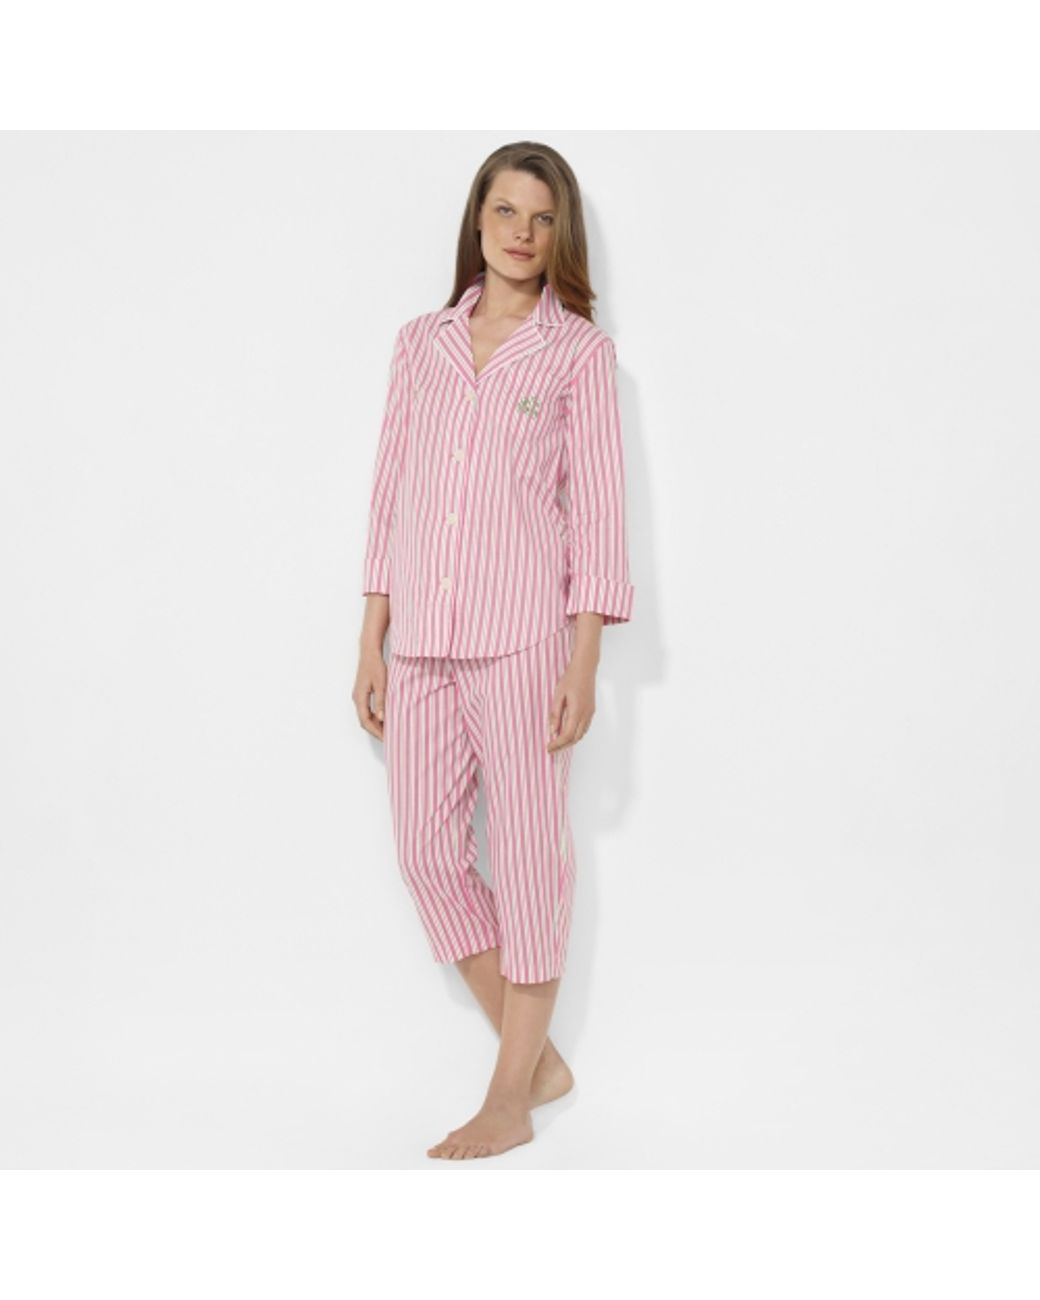 Lauren by Ralph Lauren Striped Capri Pajama Set in Pink